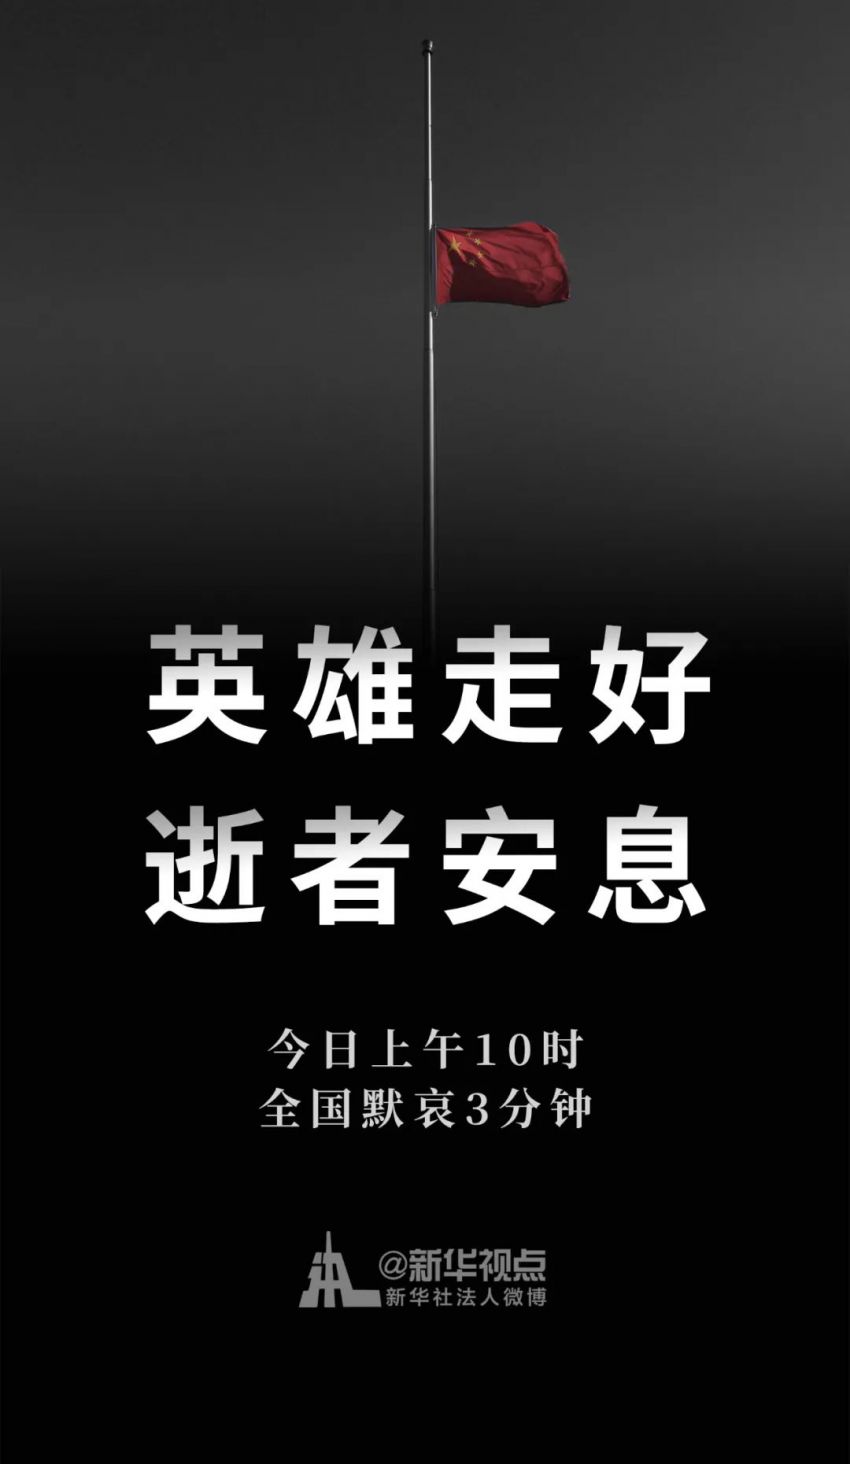 640_看图王.web.jpg